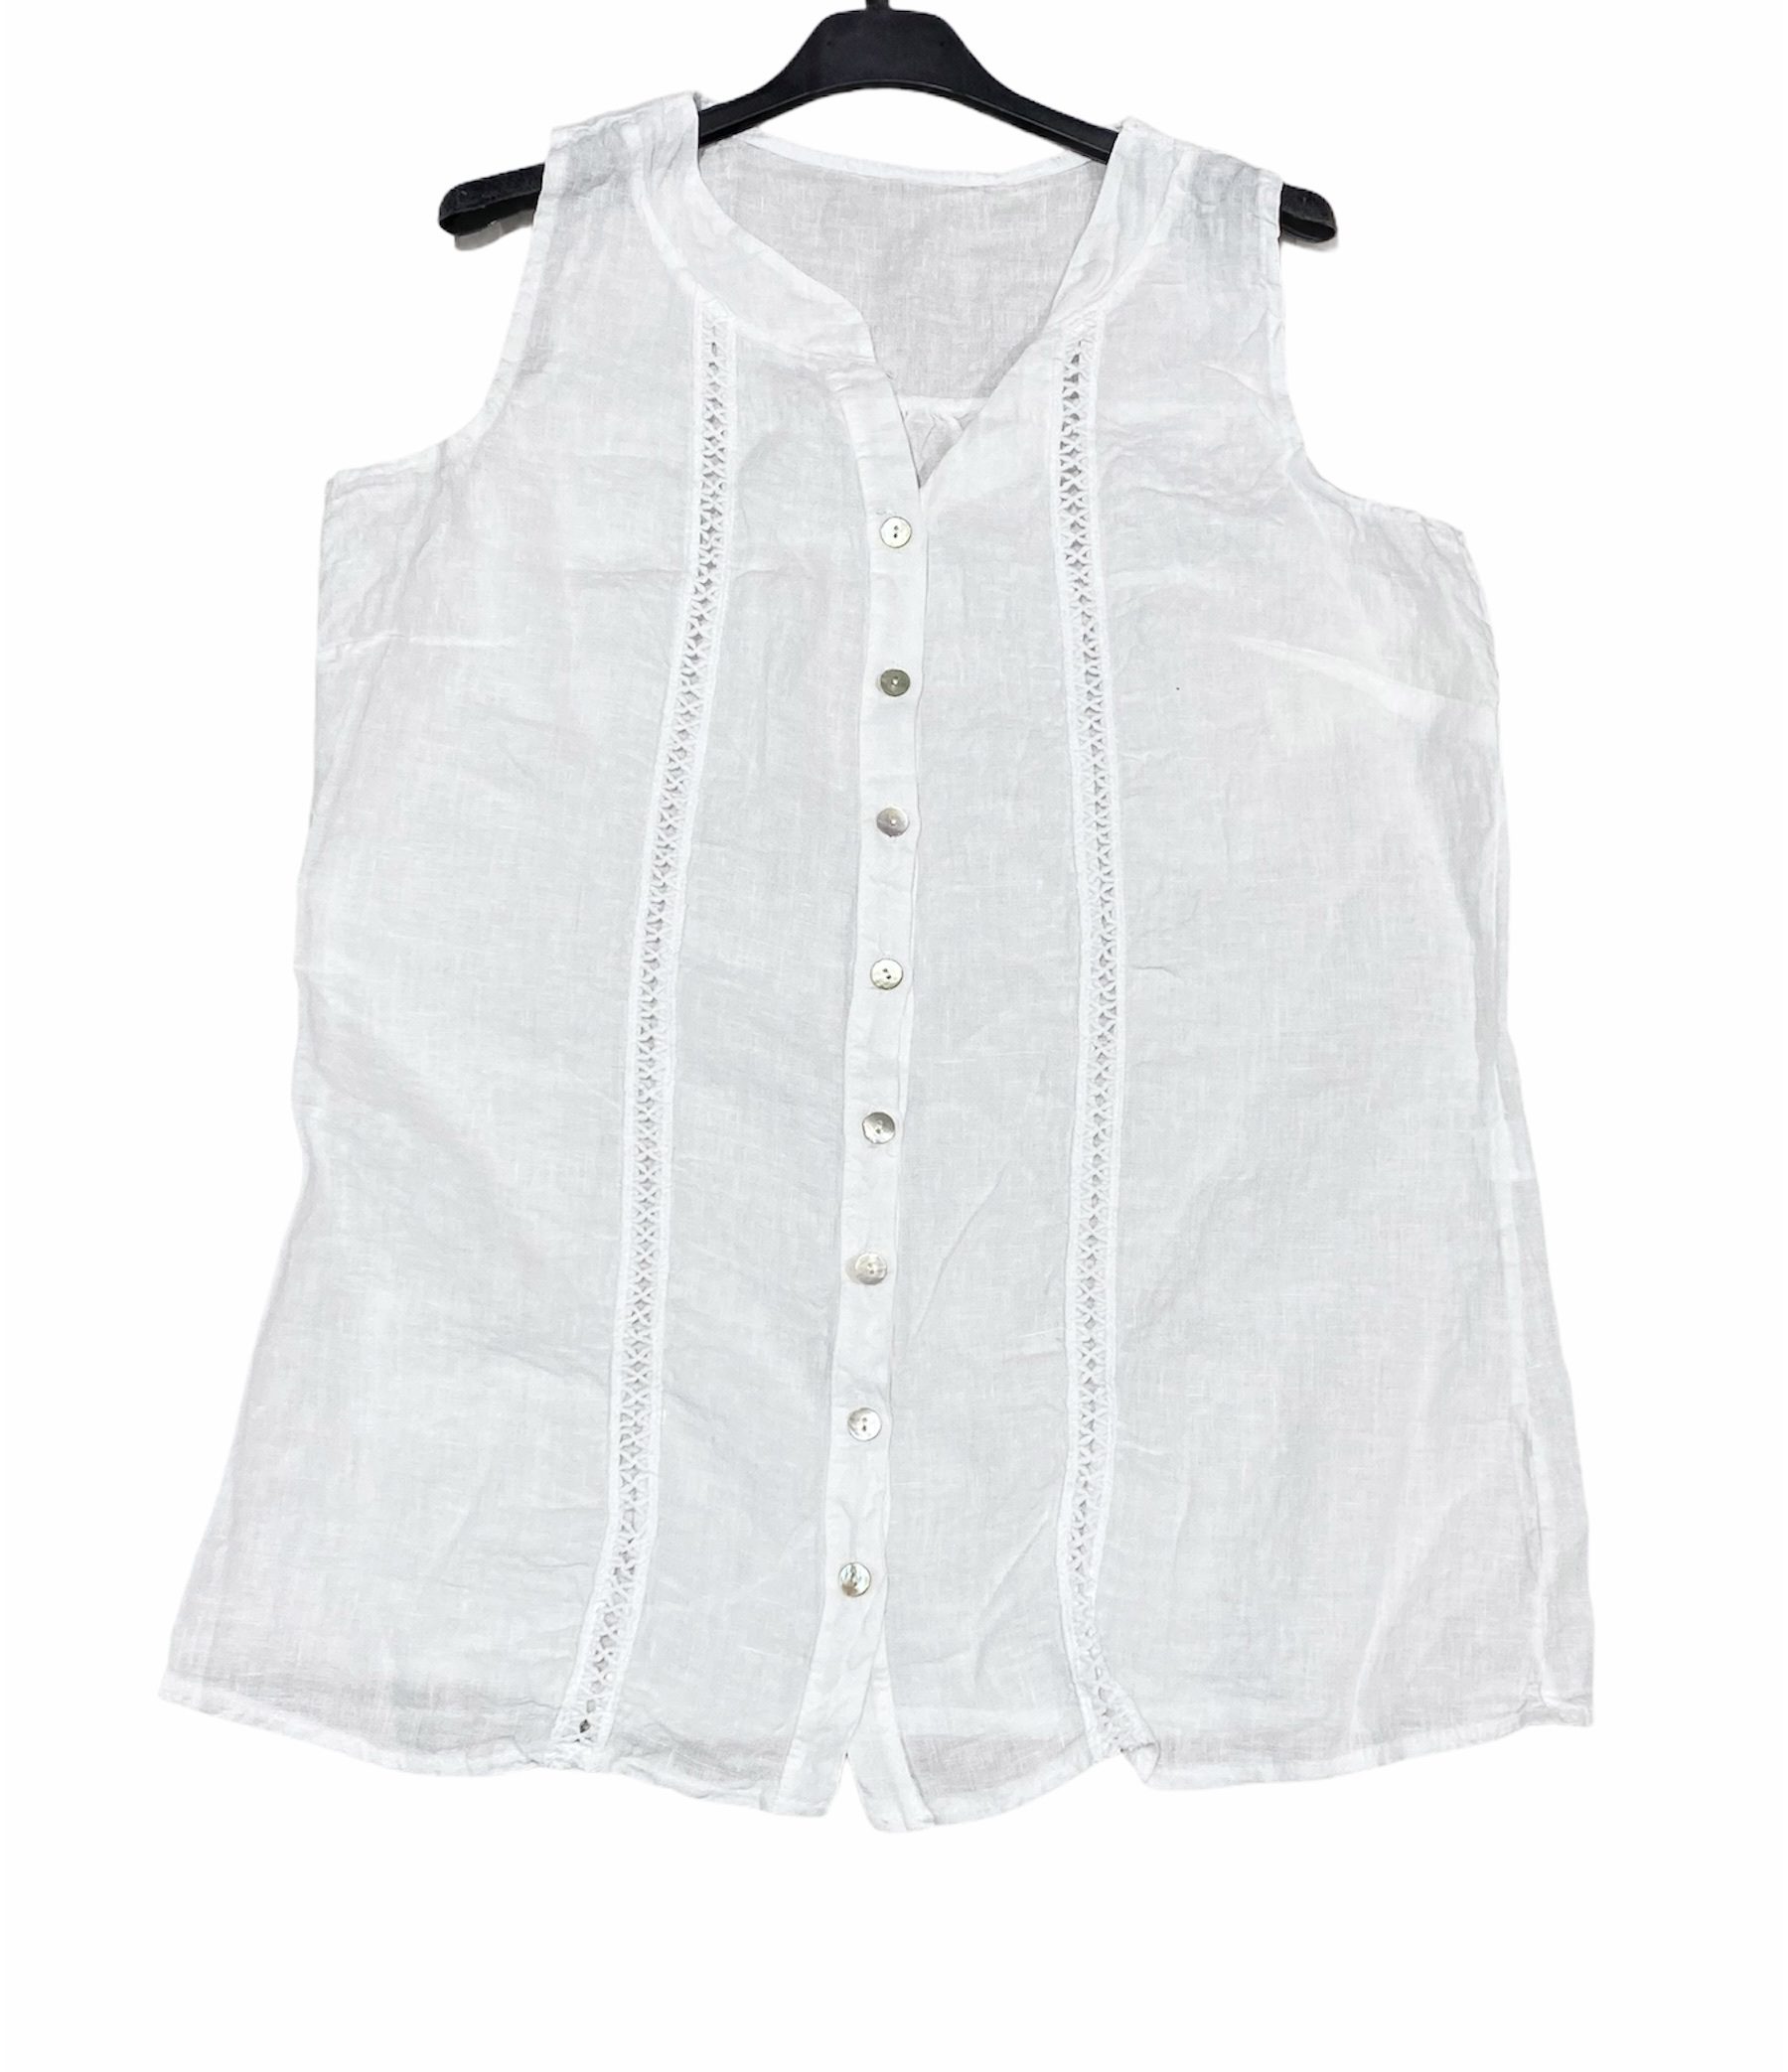 Linnen blouse met knoppen - mouwloos - luchtig top - kleur WIT - maat 44